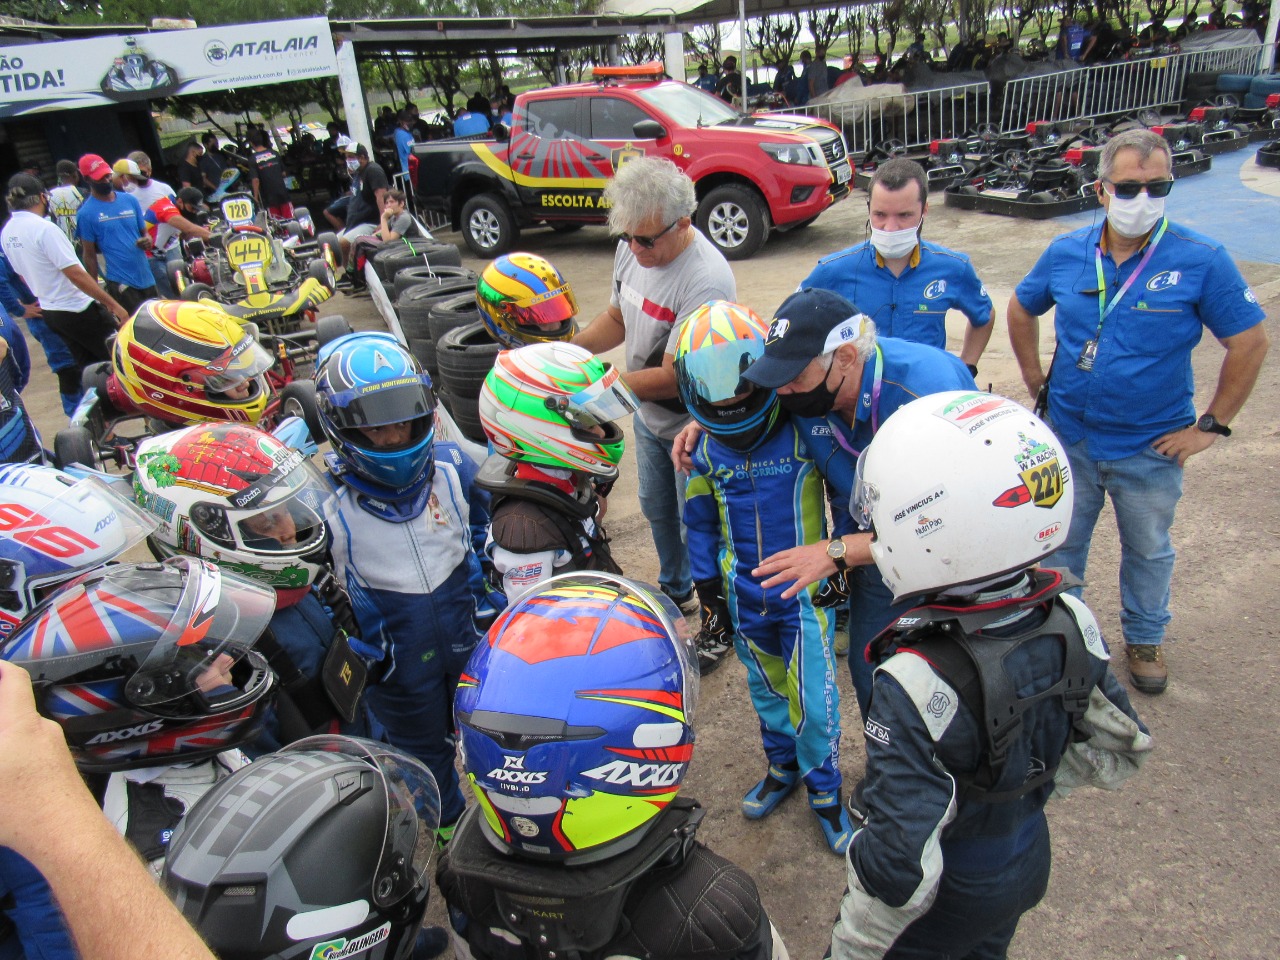 Capa Extra Destaque da Semana RACING - Campeonato Nordeste de Kart 2021